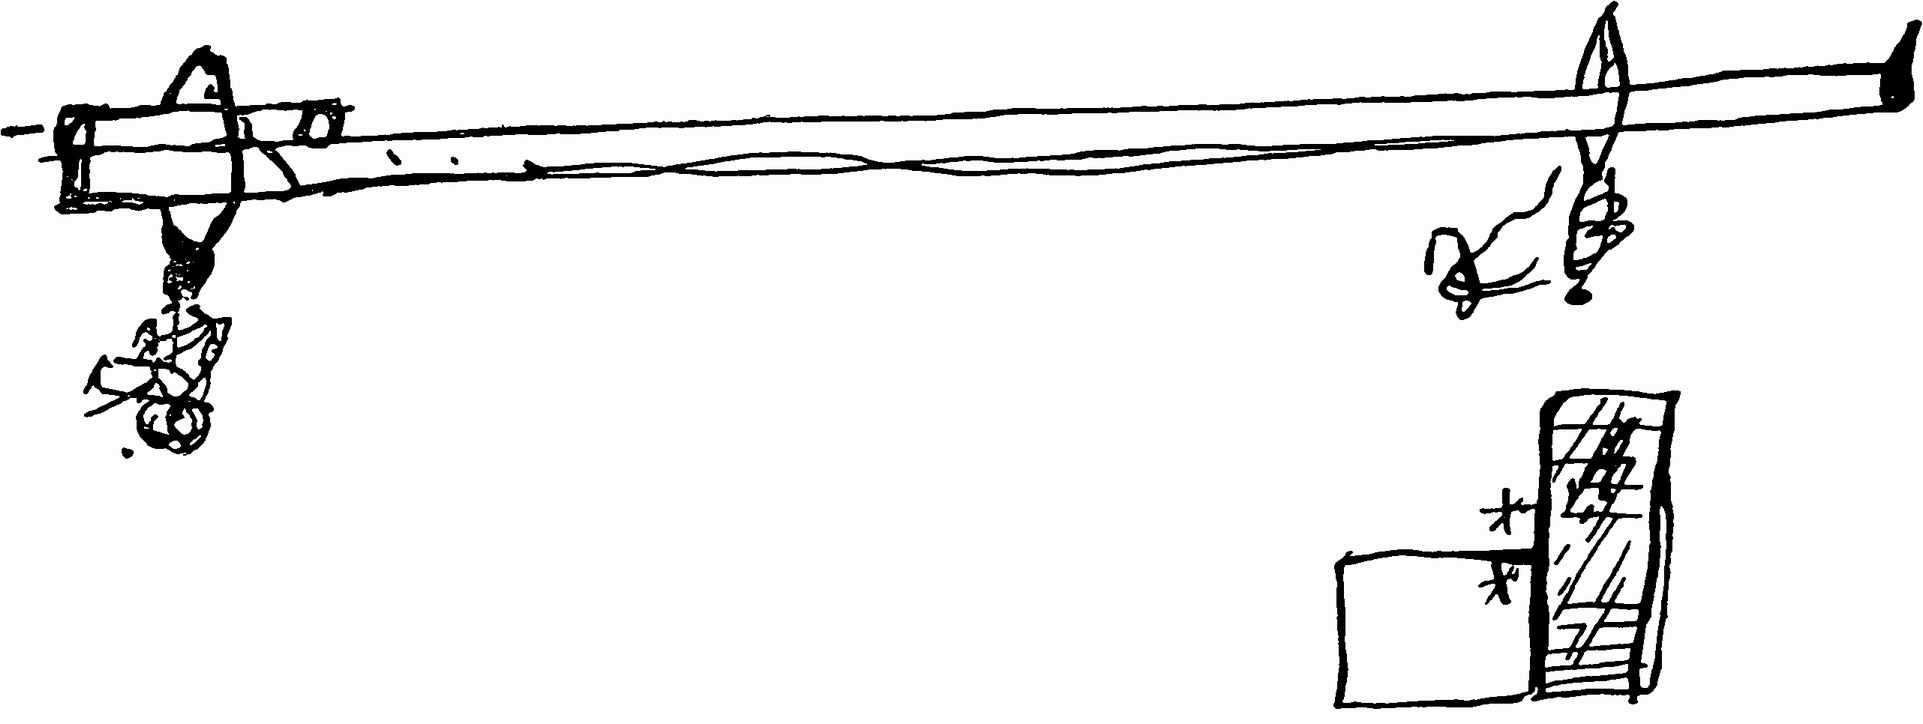 Рис. 25. «Морской жезл». Рисунок М.В. Ломоносова